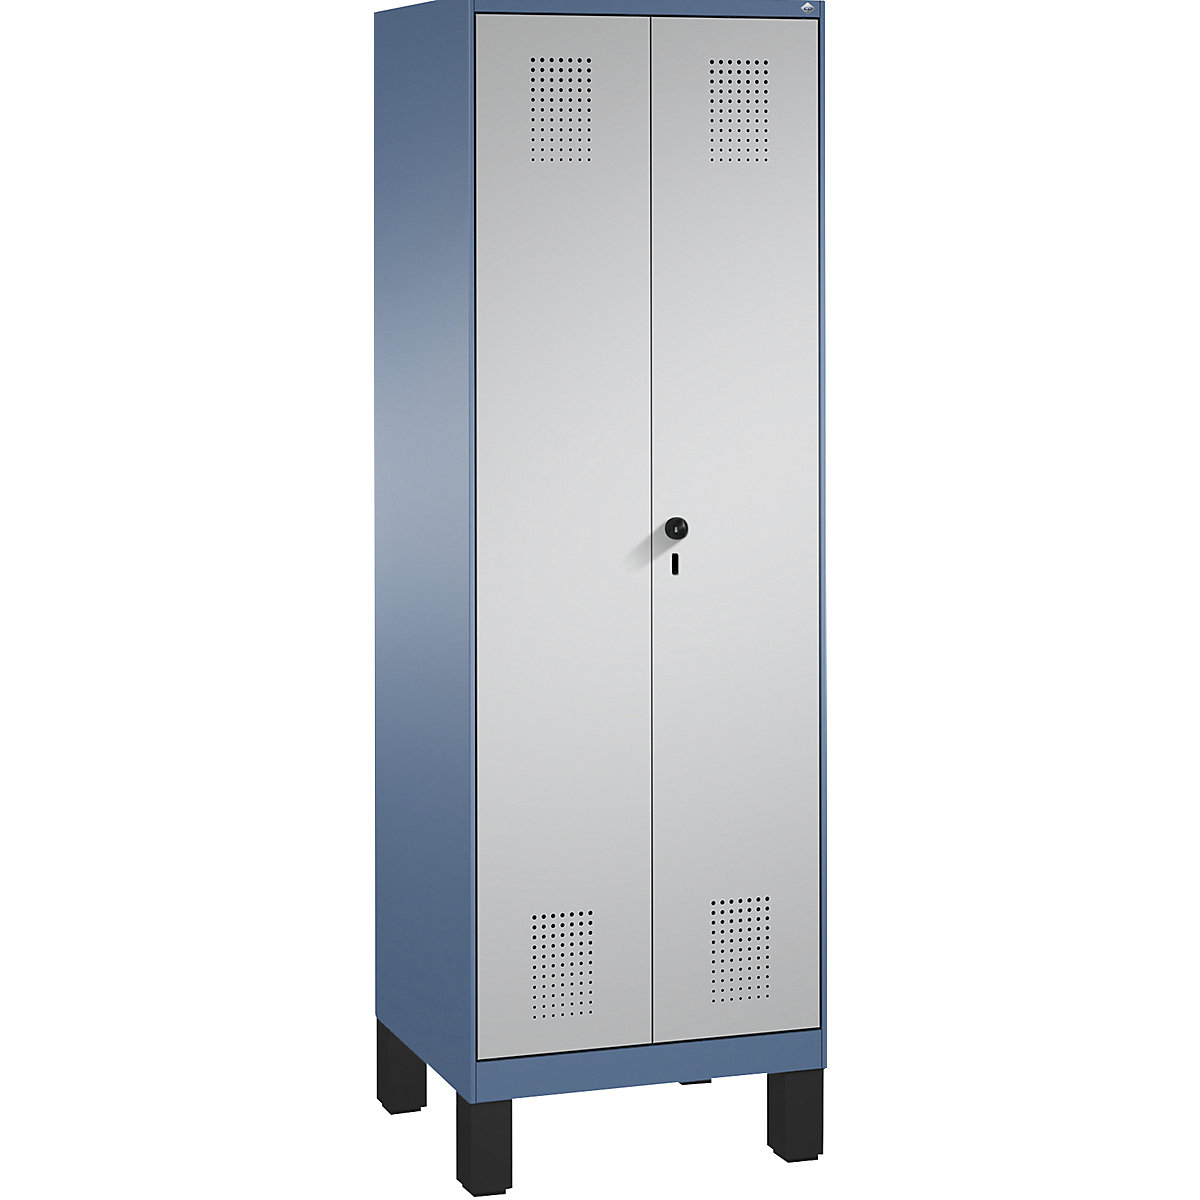 Úklidová/přístrojová skříň EVOLO – C+P, zkrácená dělicí stěna, 6 háků, oddíly 2 x 300 mm, s nohami, modrošedá / bílý hliník-9